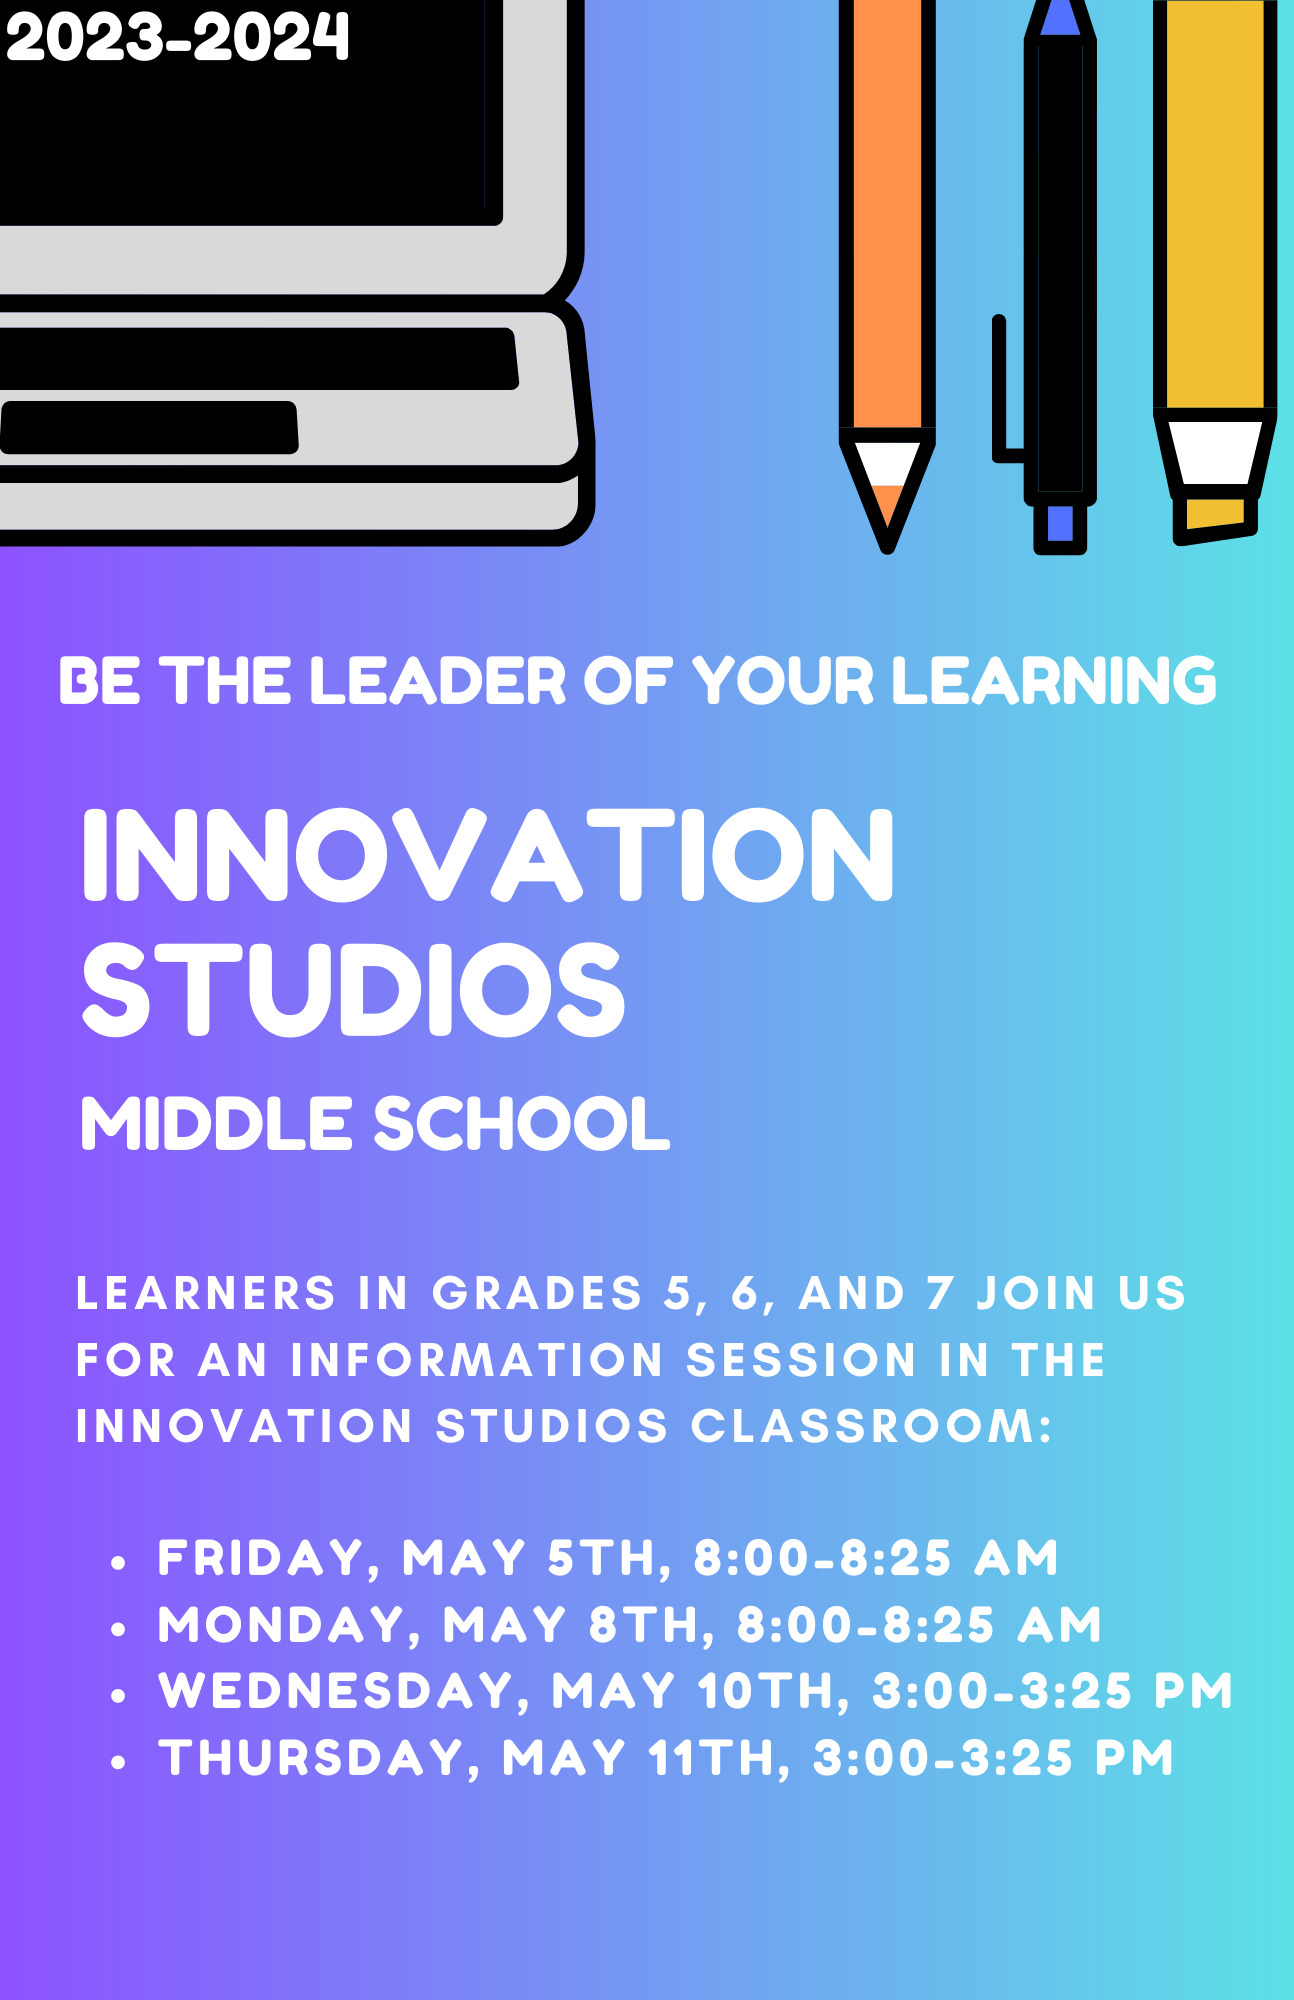 Innovation Studios Information Flyer